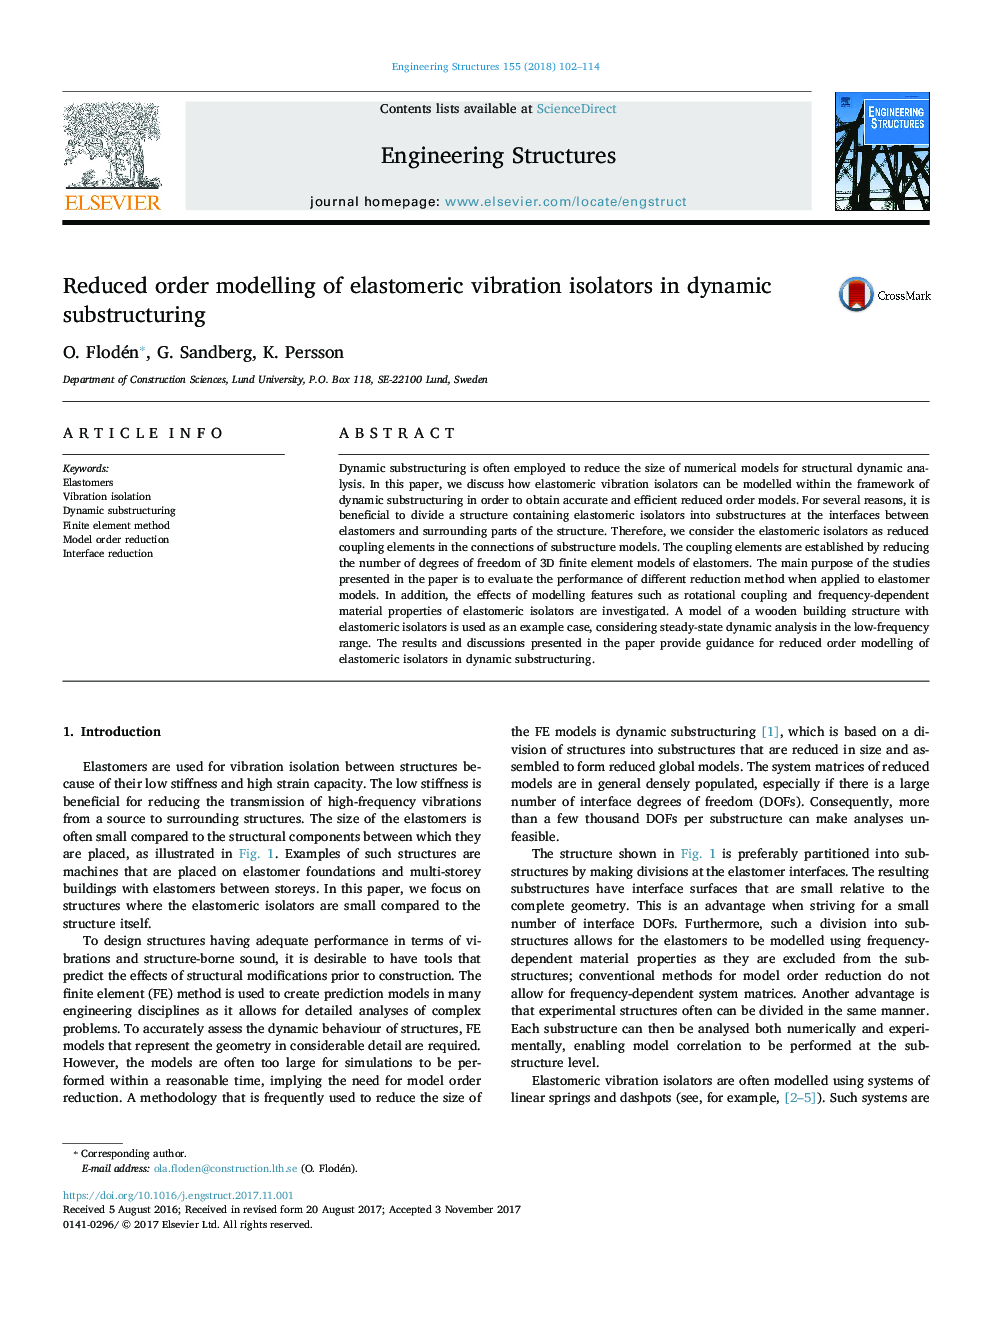 مدل سازی نظم ایزولاتورهای ارتعاشی الاستومر در زیر ساخت دینامیکی کاهش یافته است 